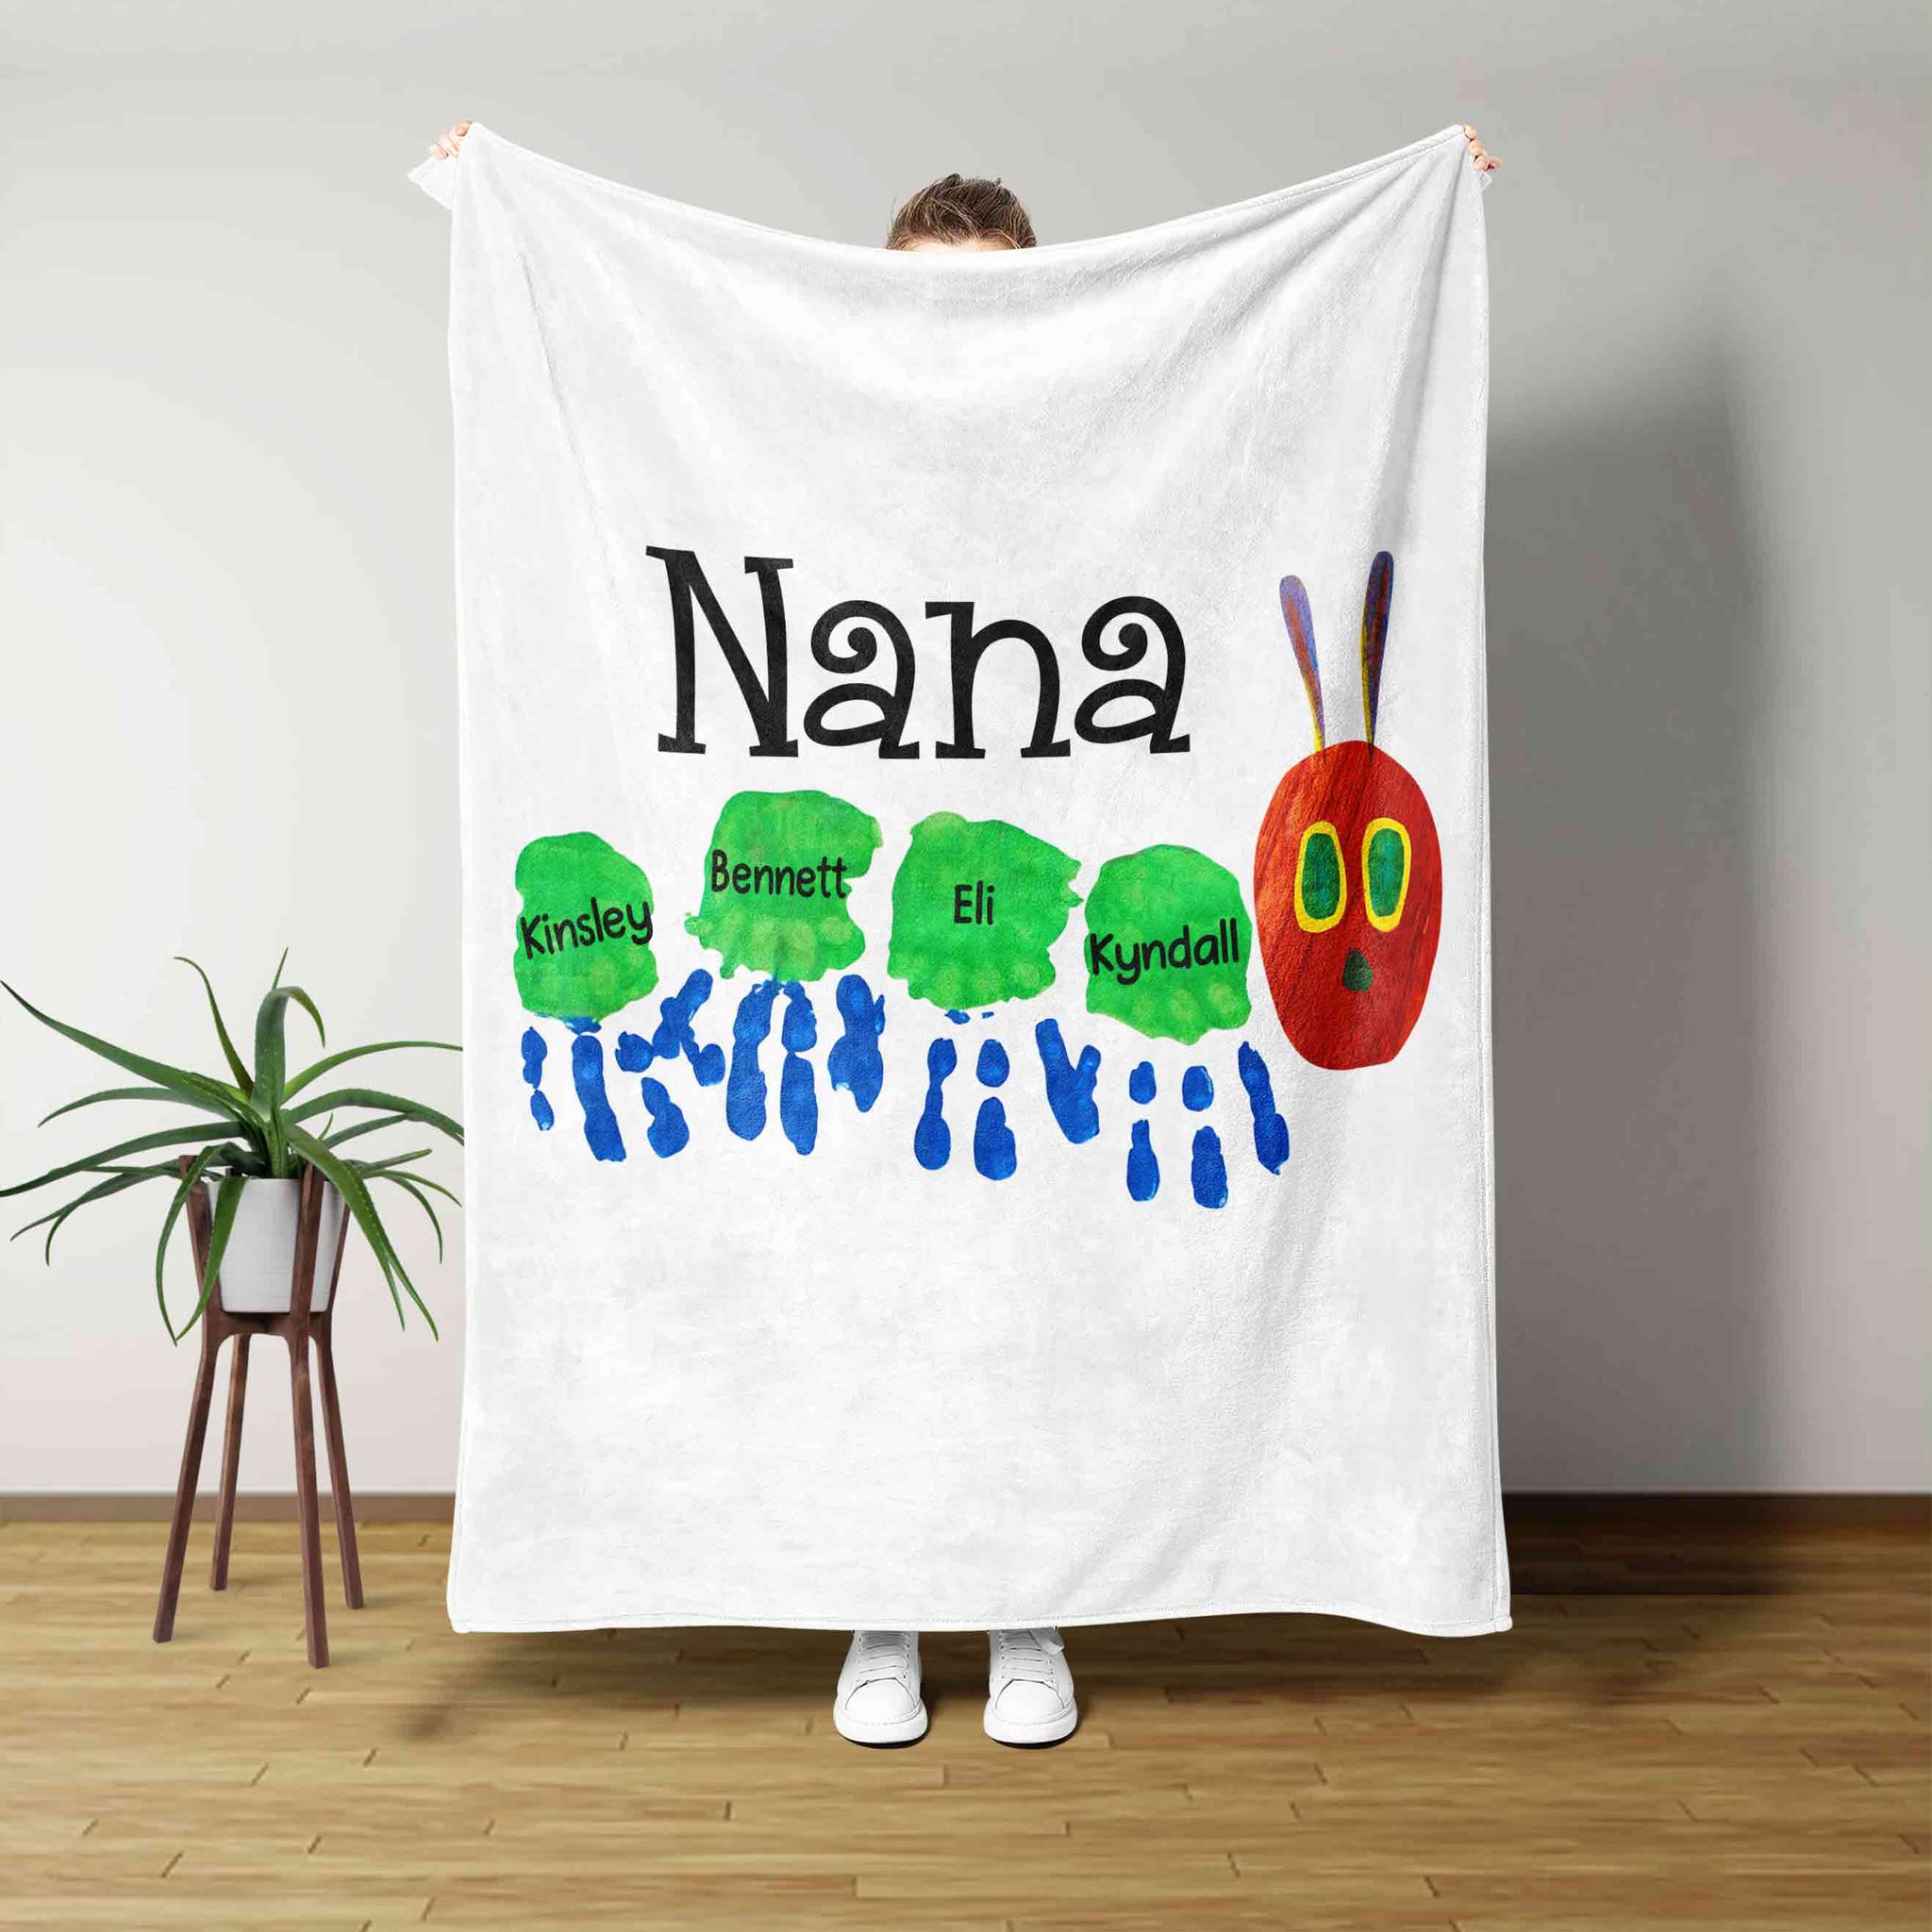 Nana Blanket, Hand Blanket, Color Blanket, Family Blanket, Custom Name Blanket, Gift Blanket